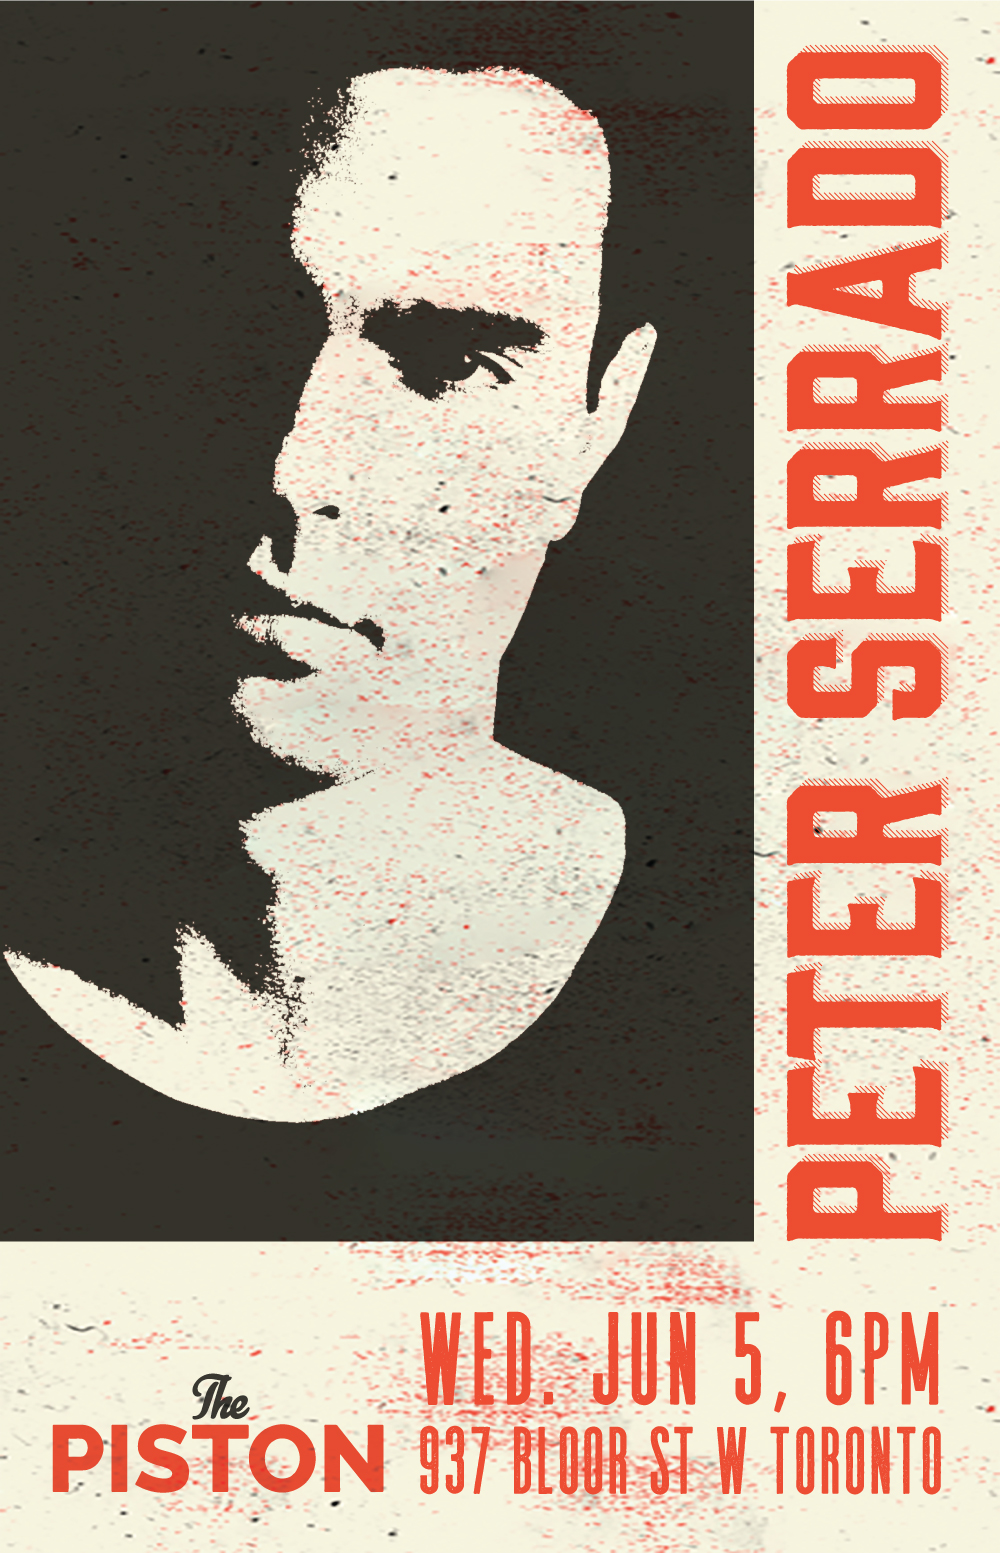 Peter Serrado Poster